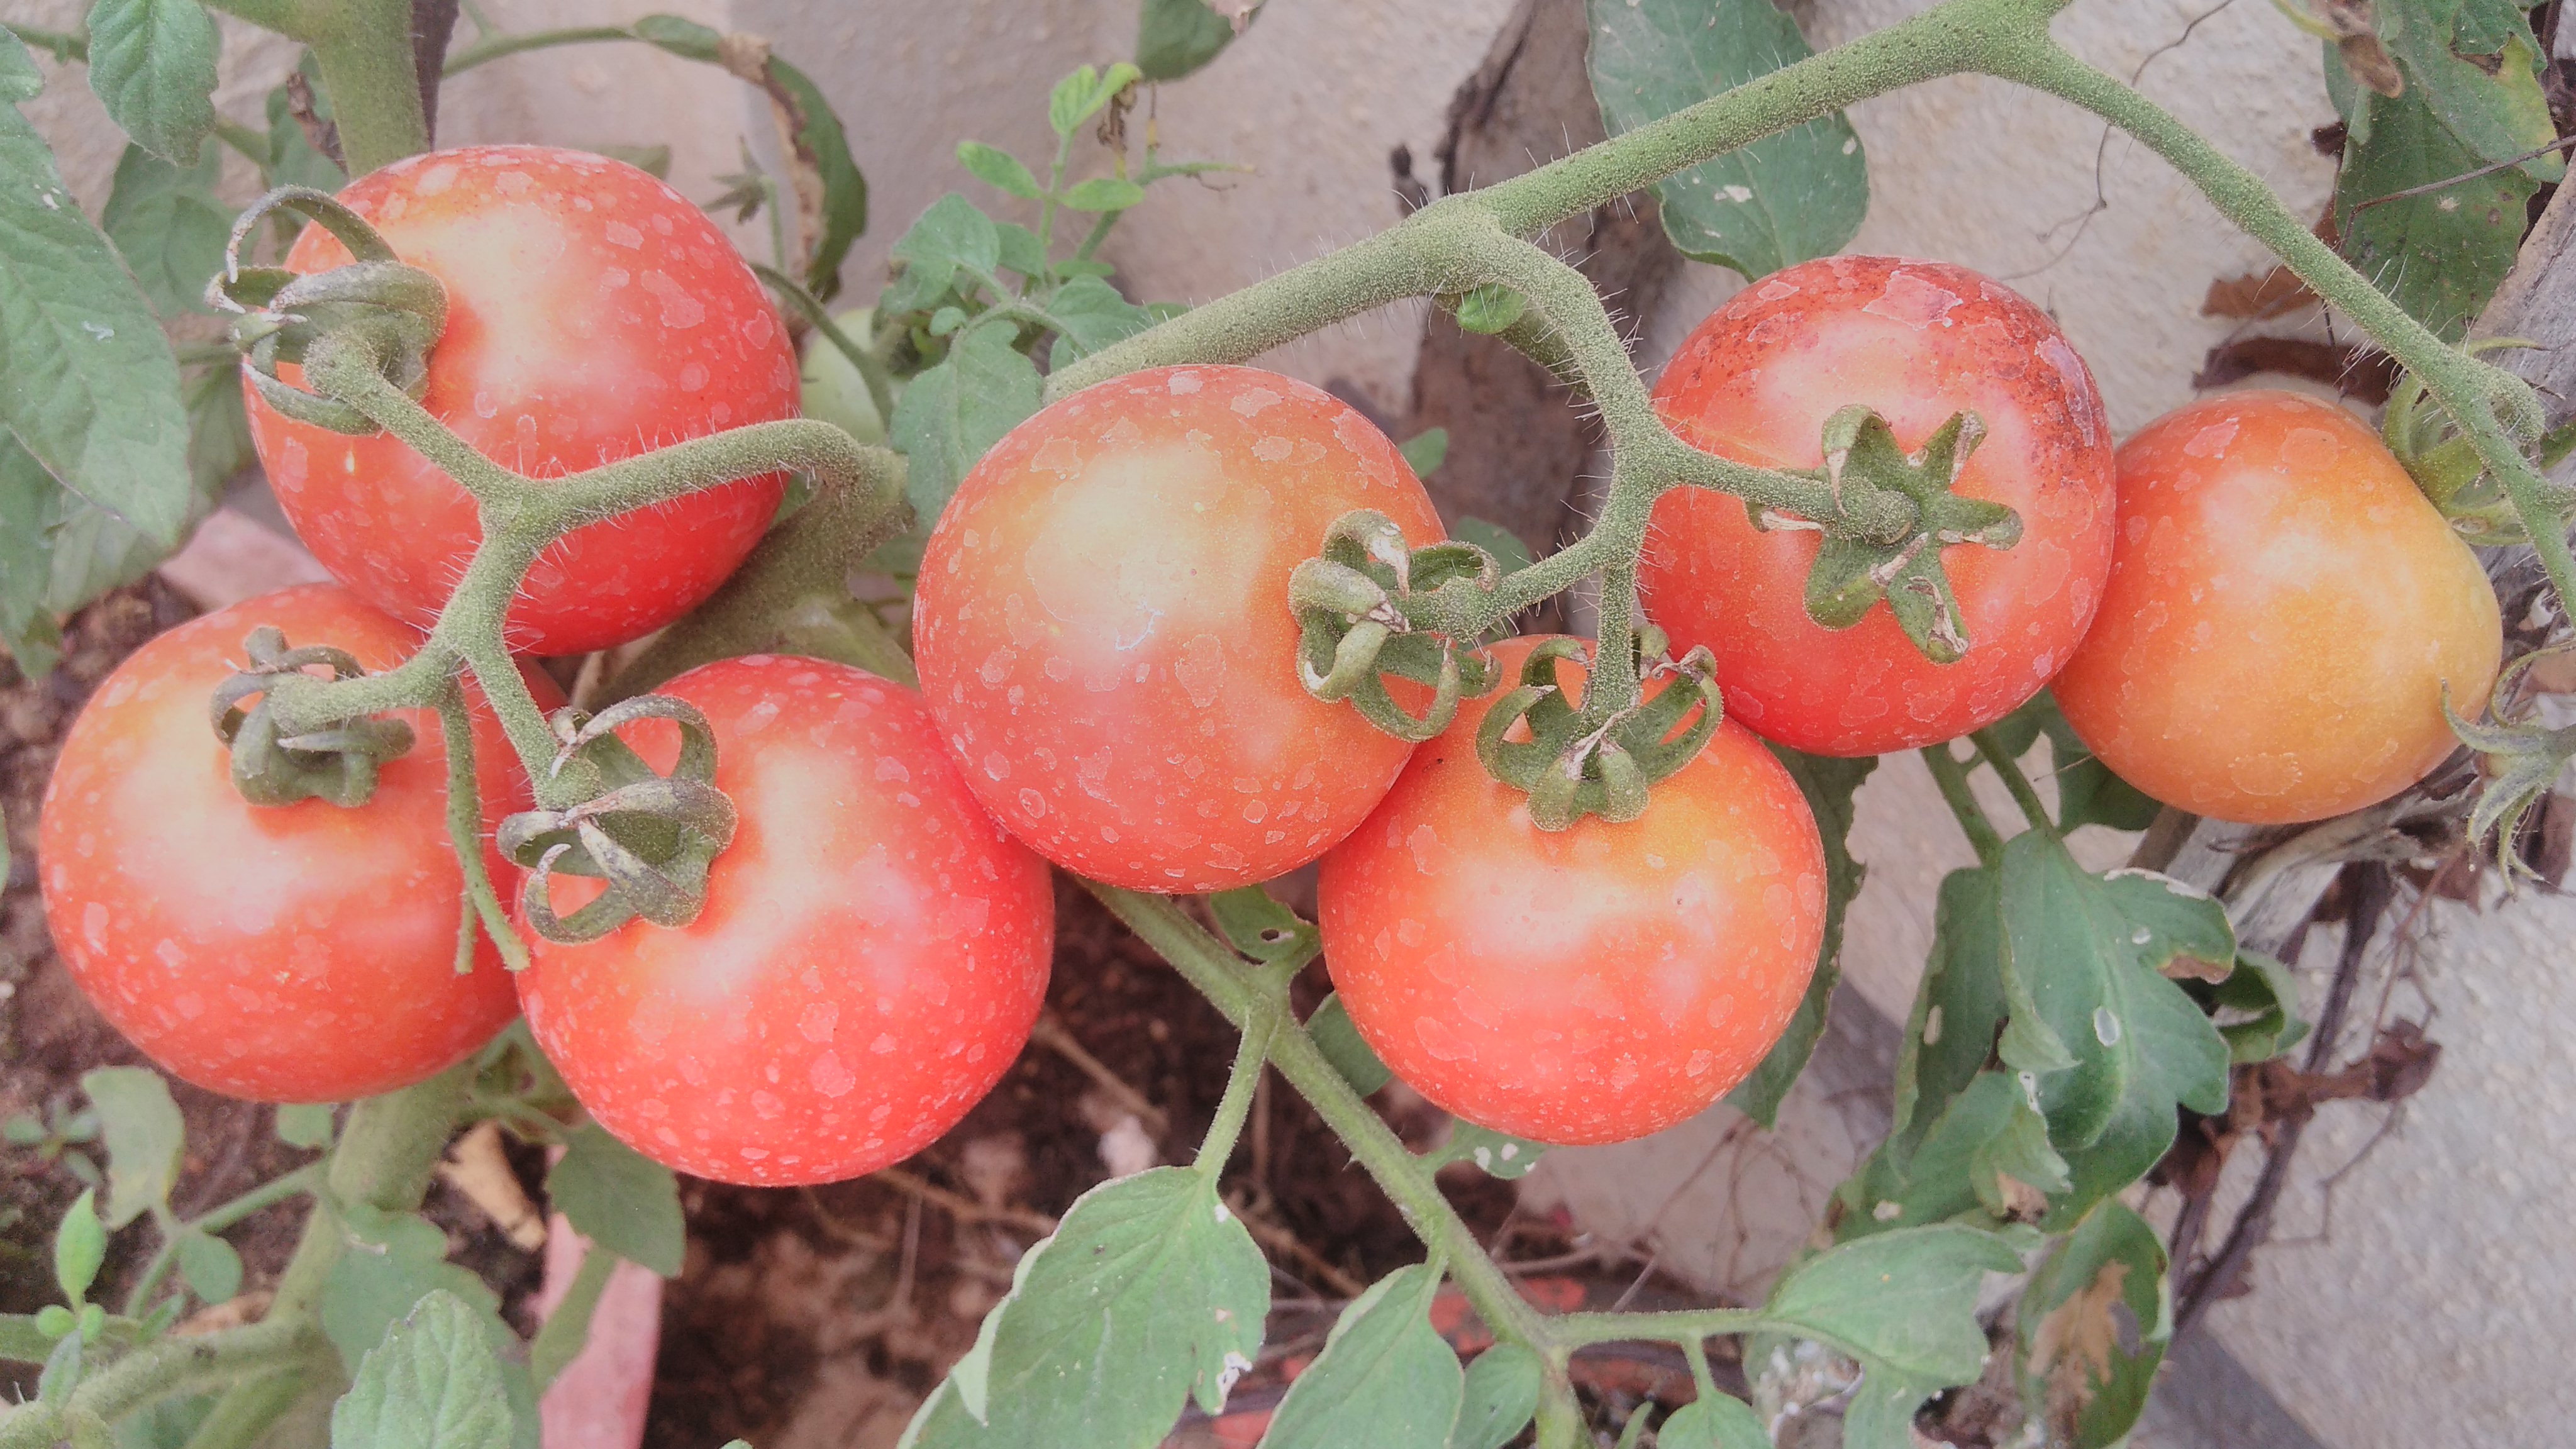 sofspics tomatoes